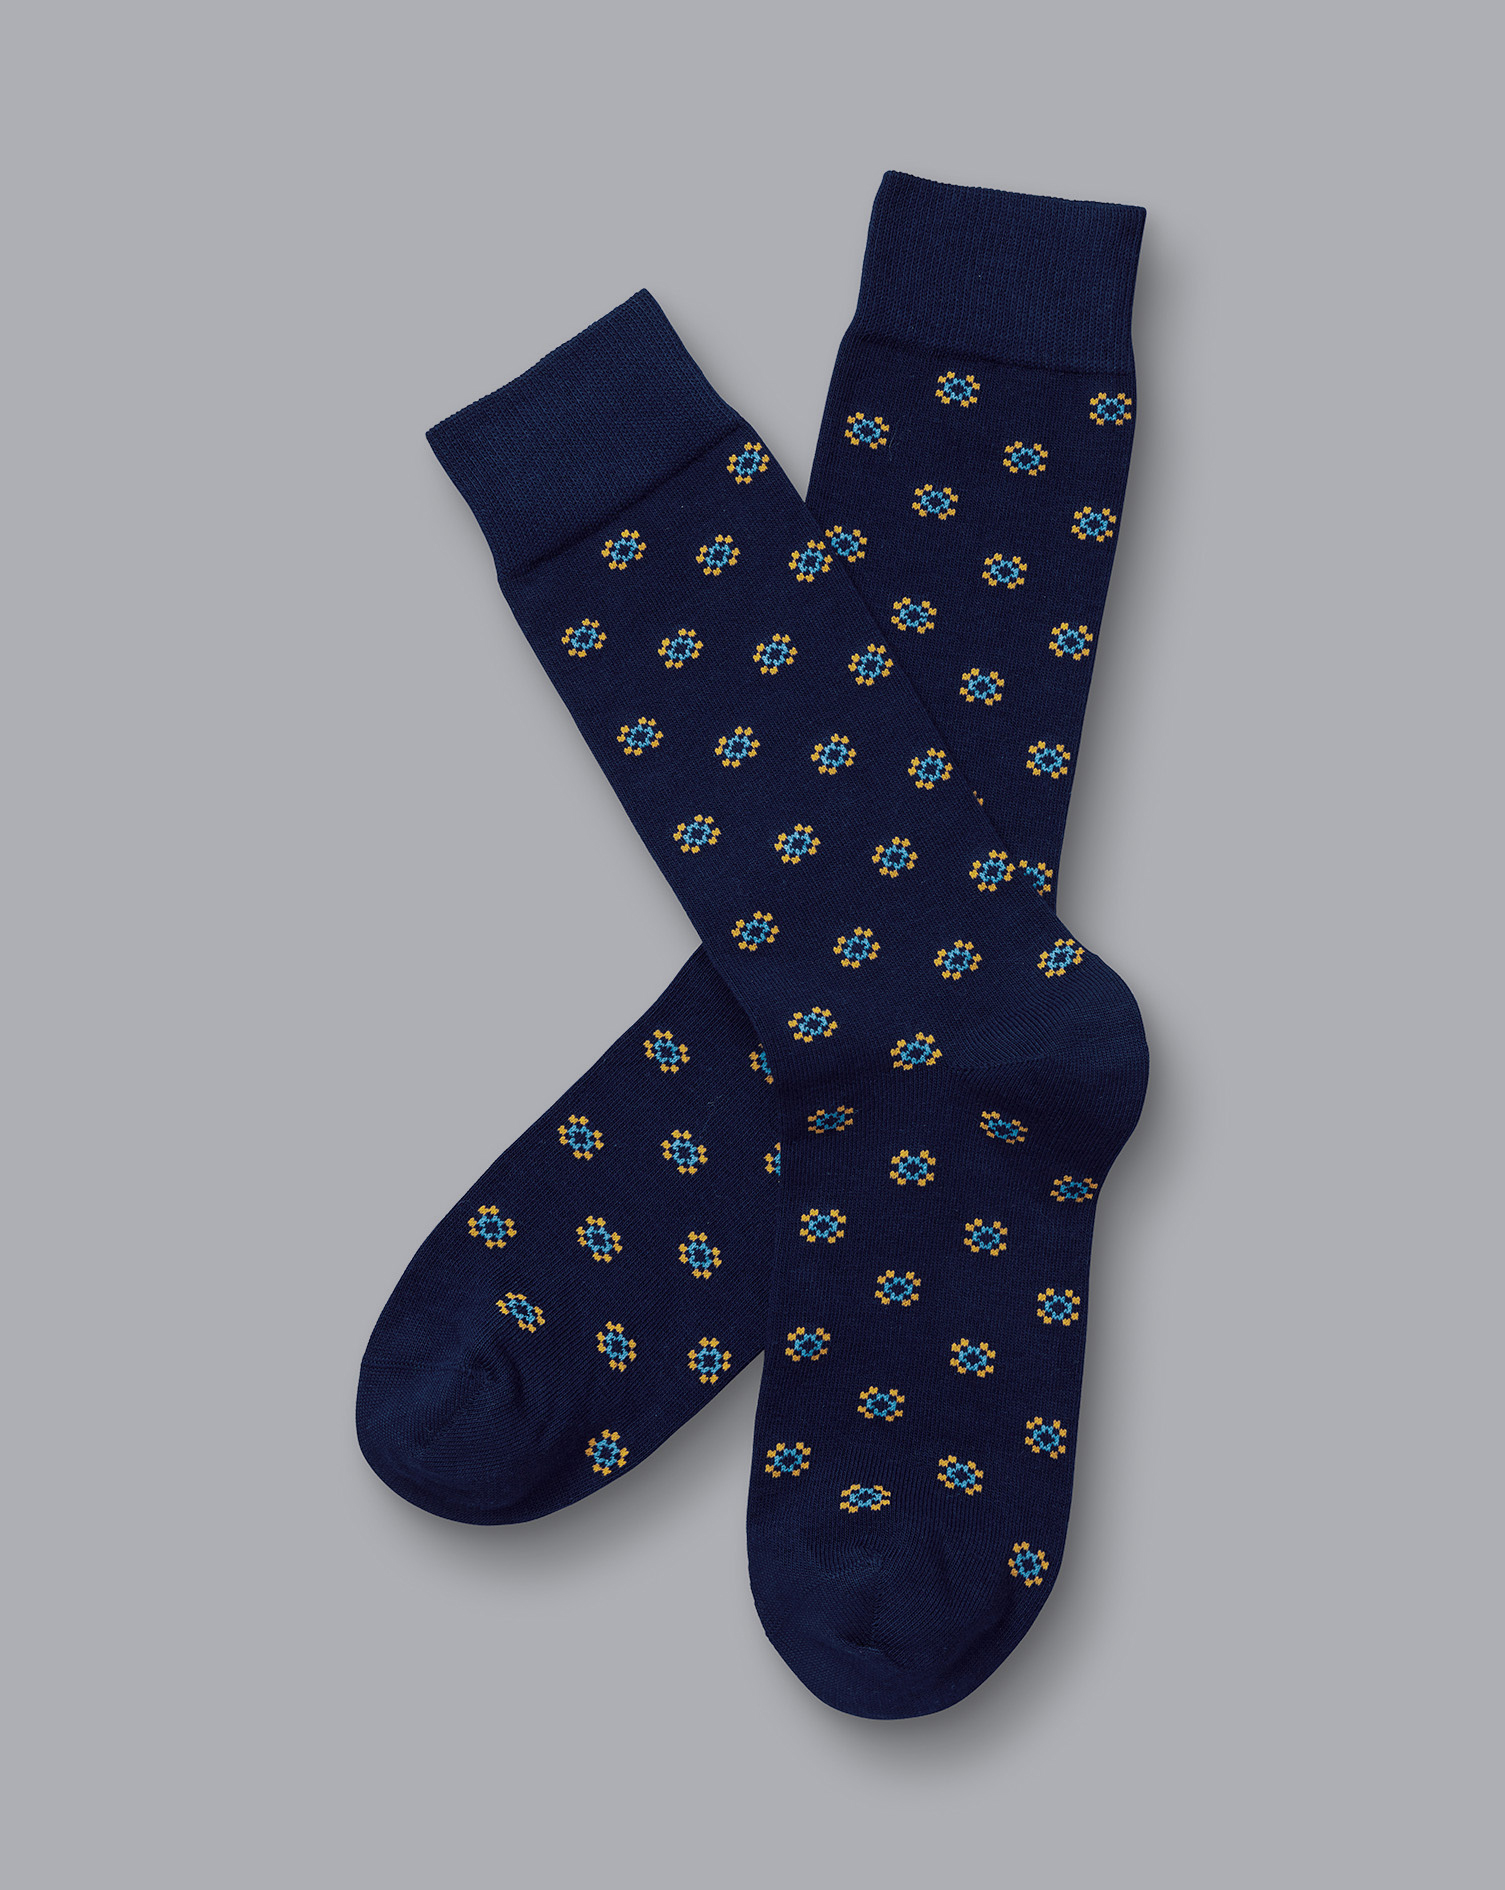 Men's Charles Tyrwhitt Geo Socks - French Blue Size 6-10 Cotton
